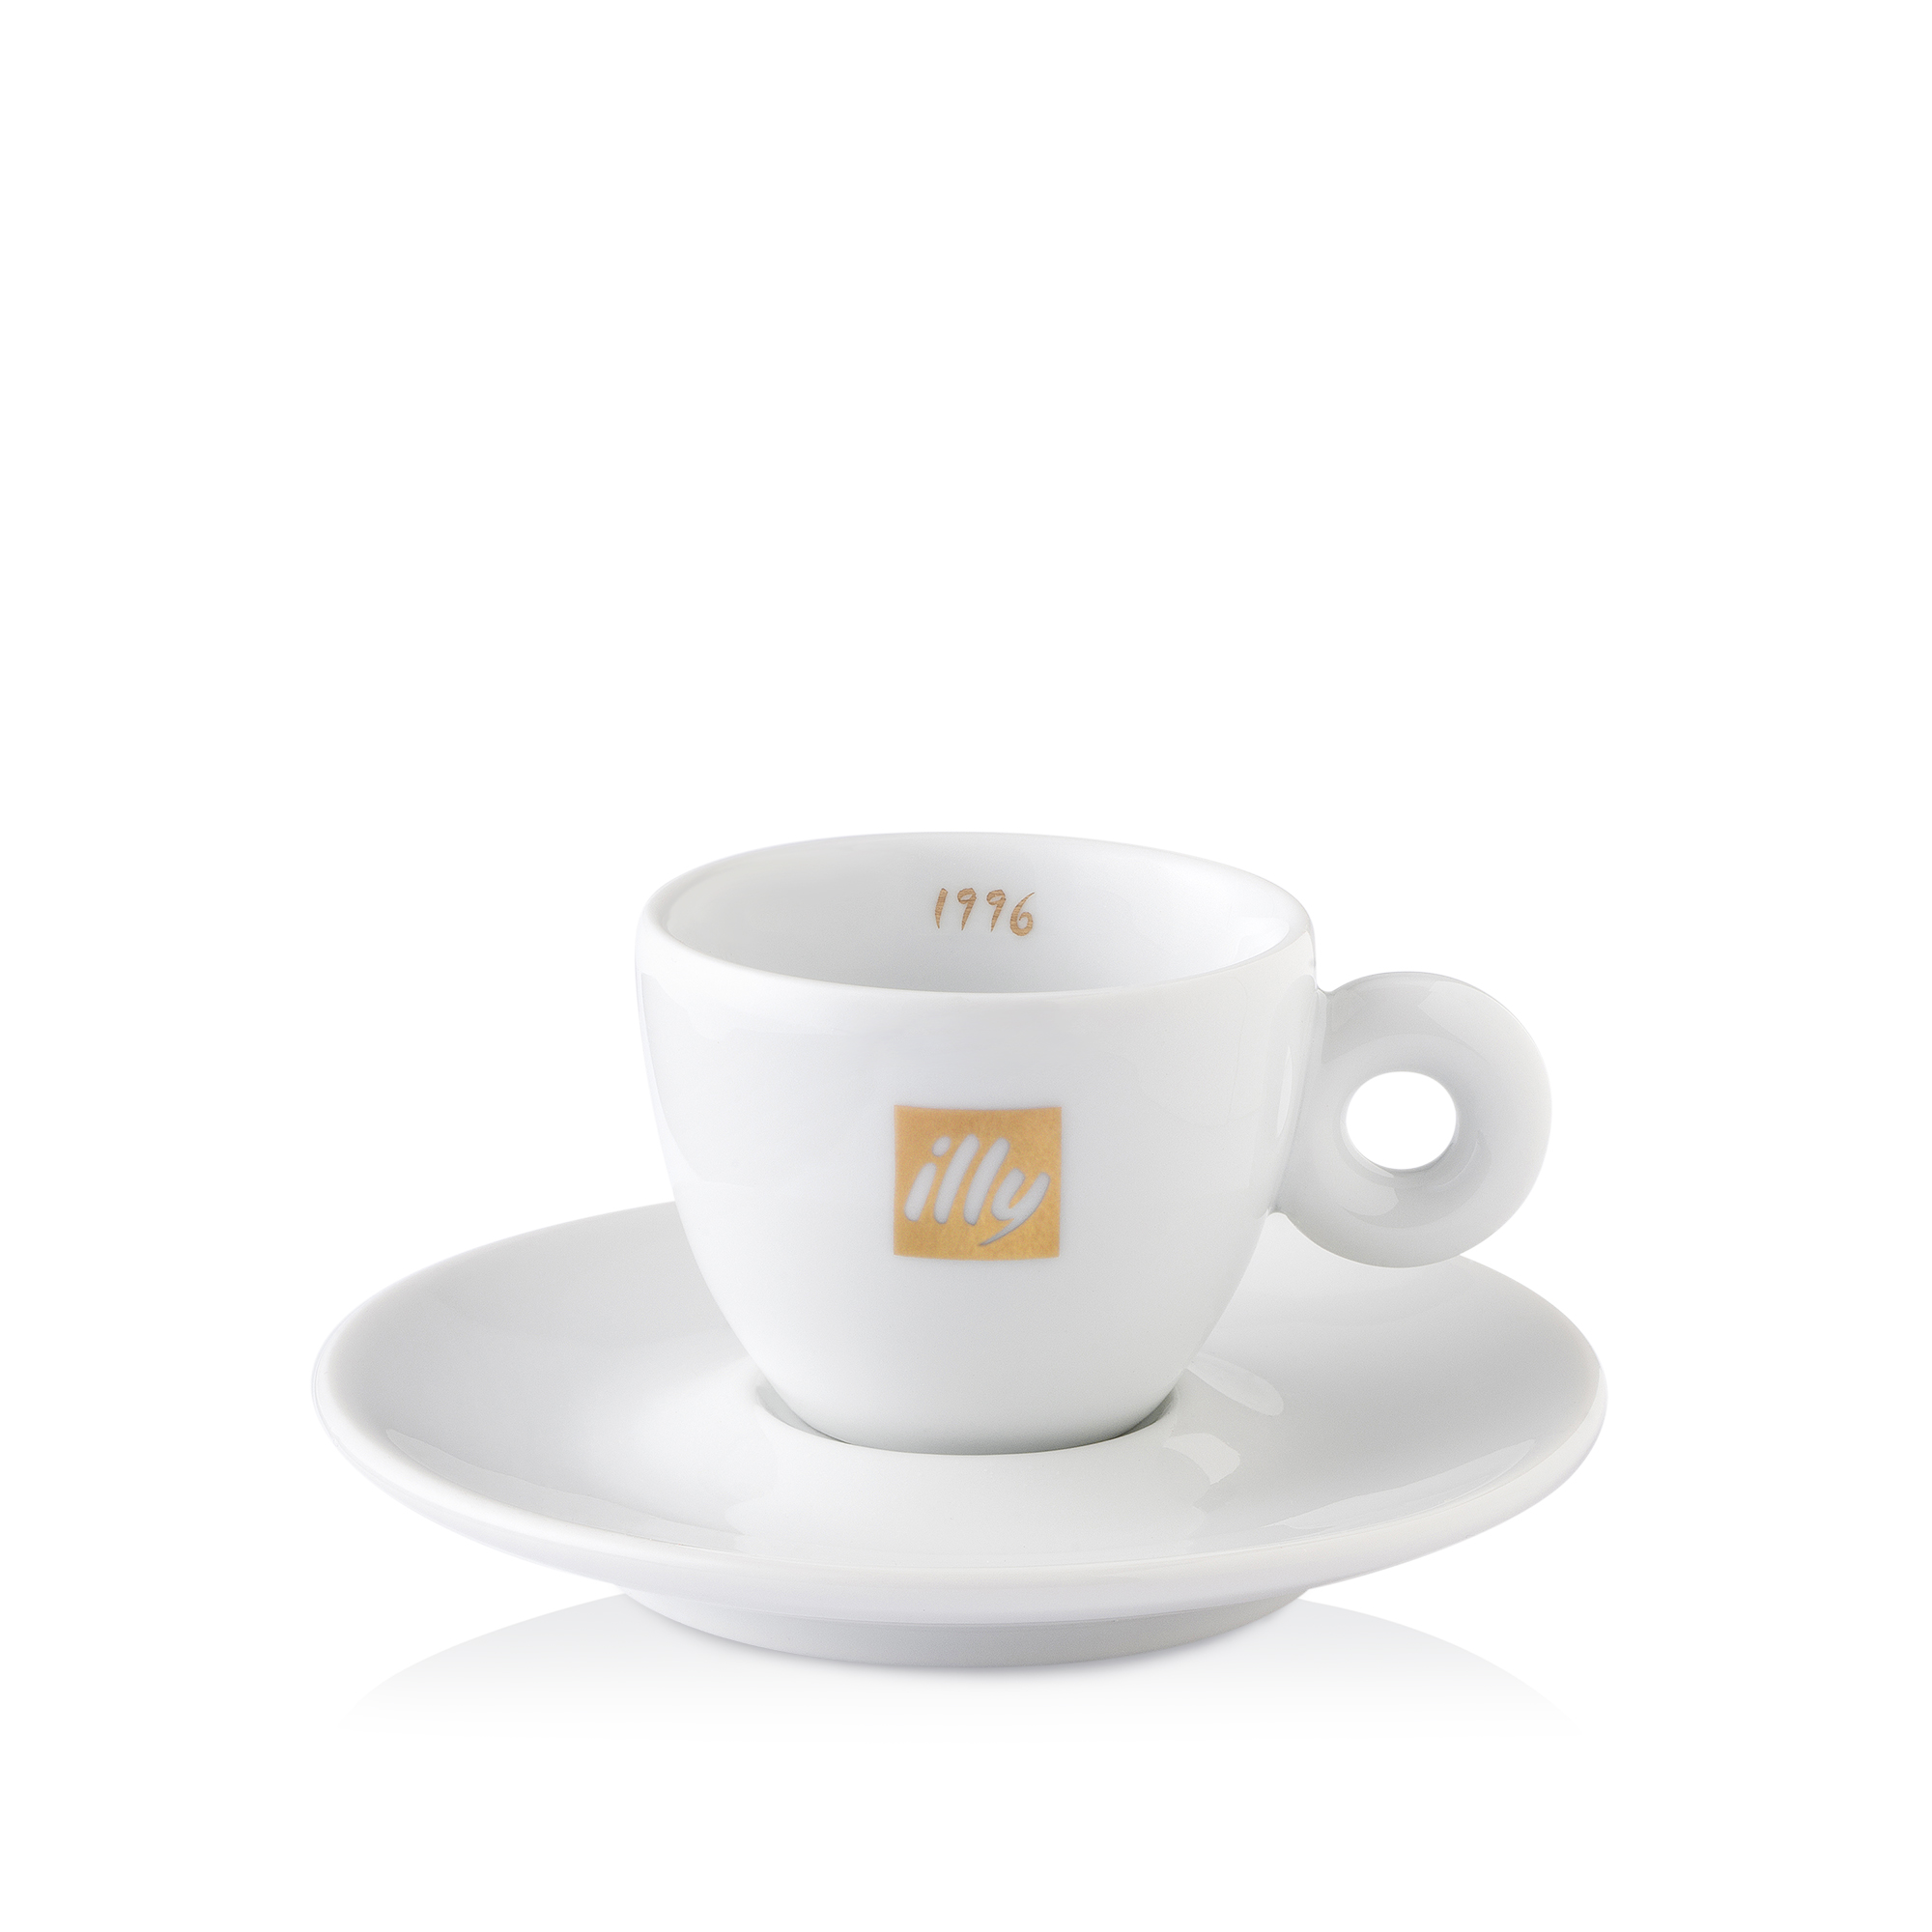 90-jarig jubileum: blik Classico koffie met 6 espressokopjes